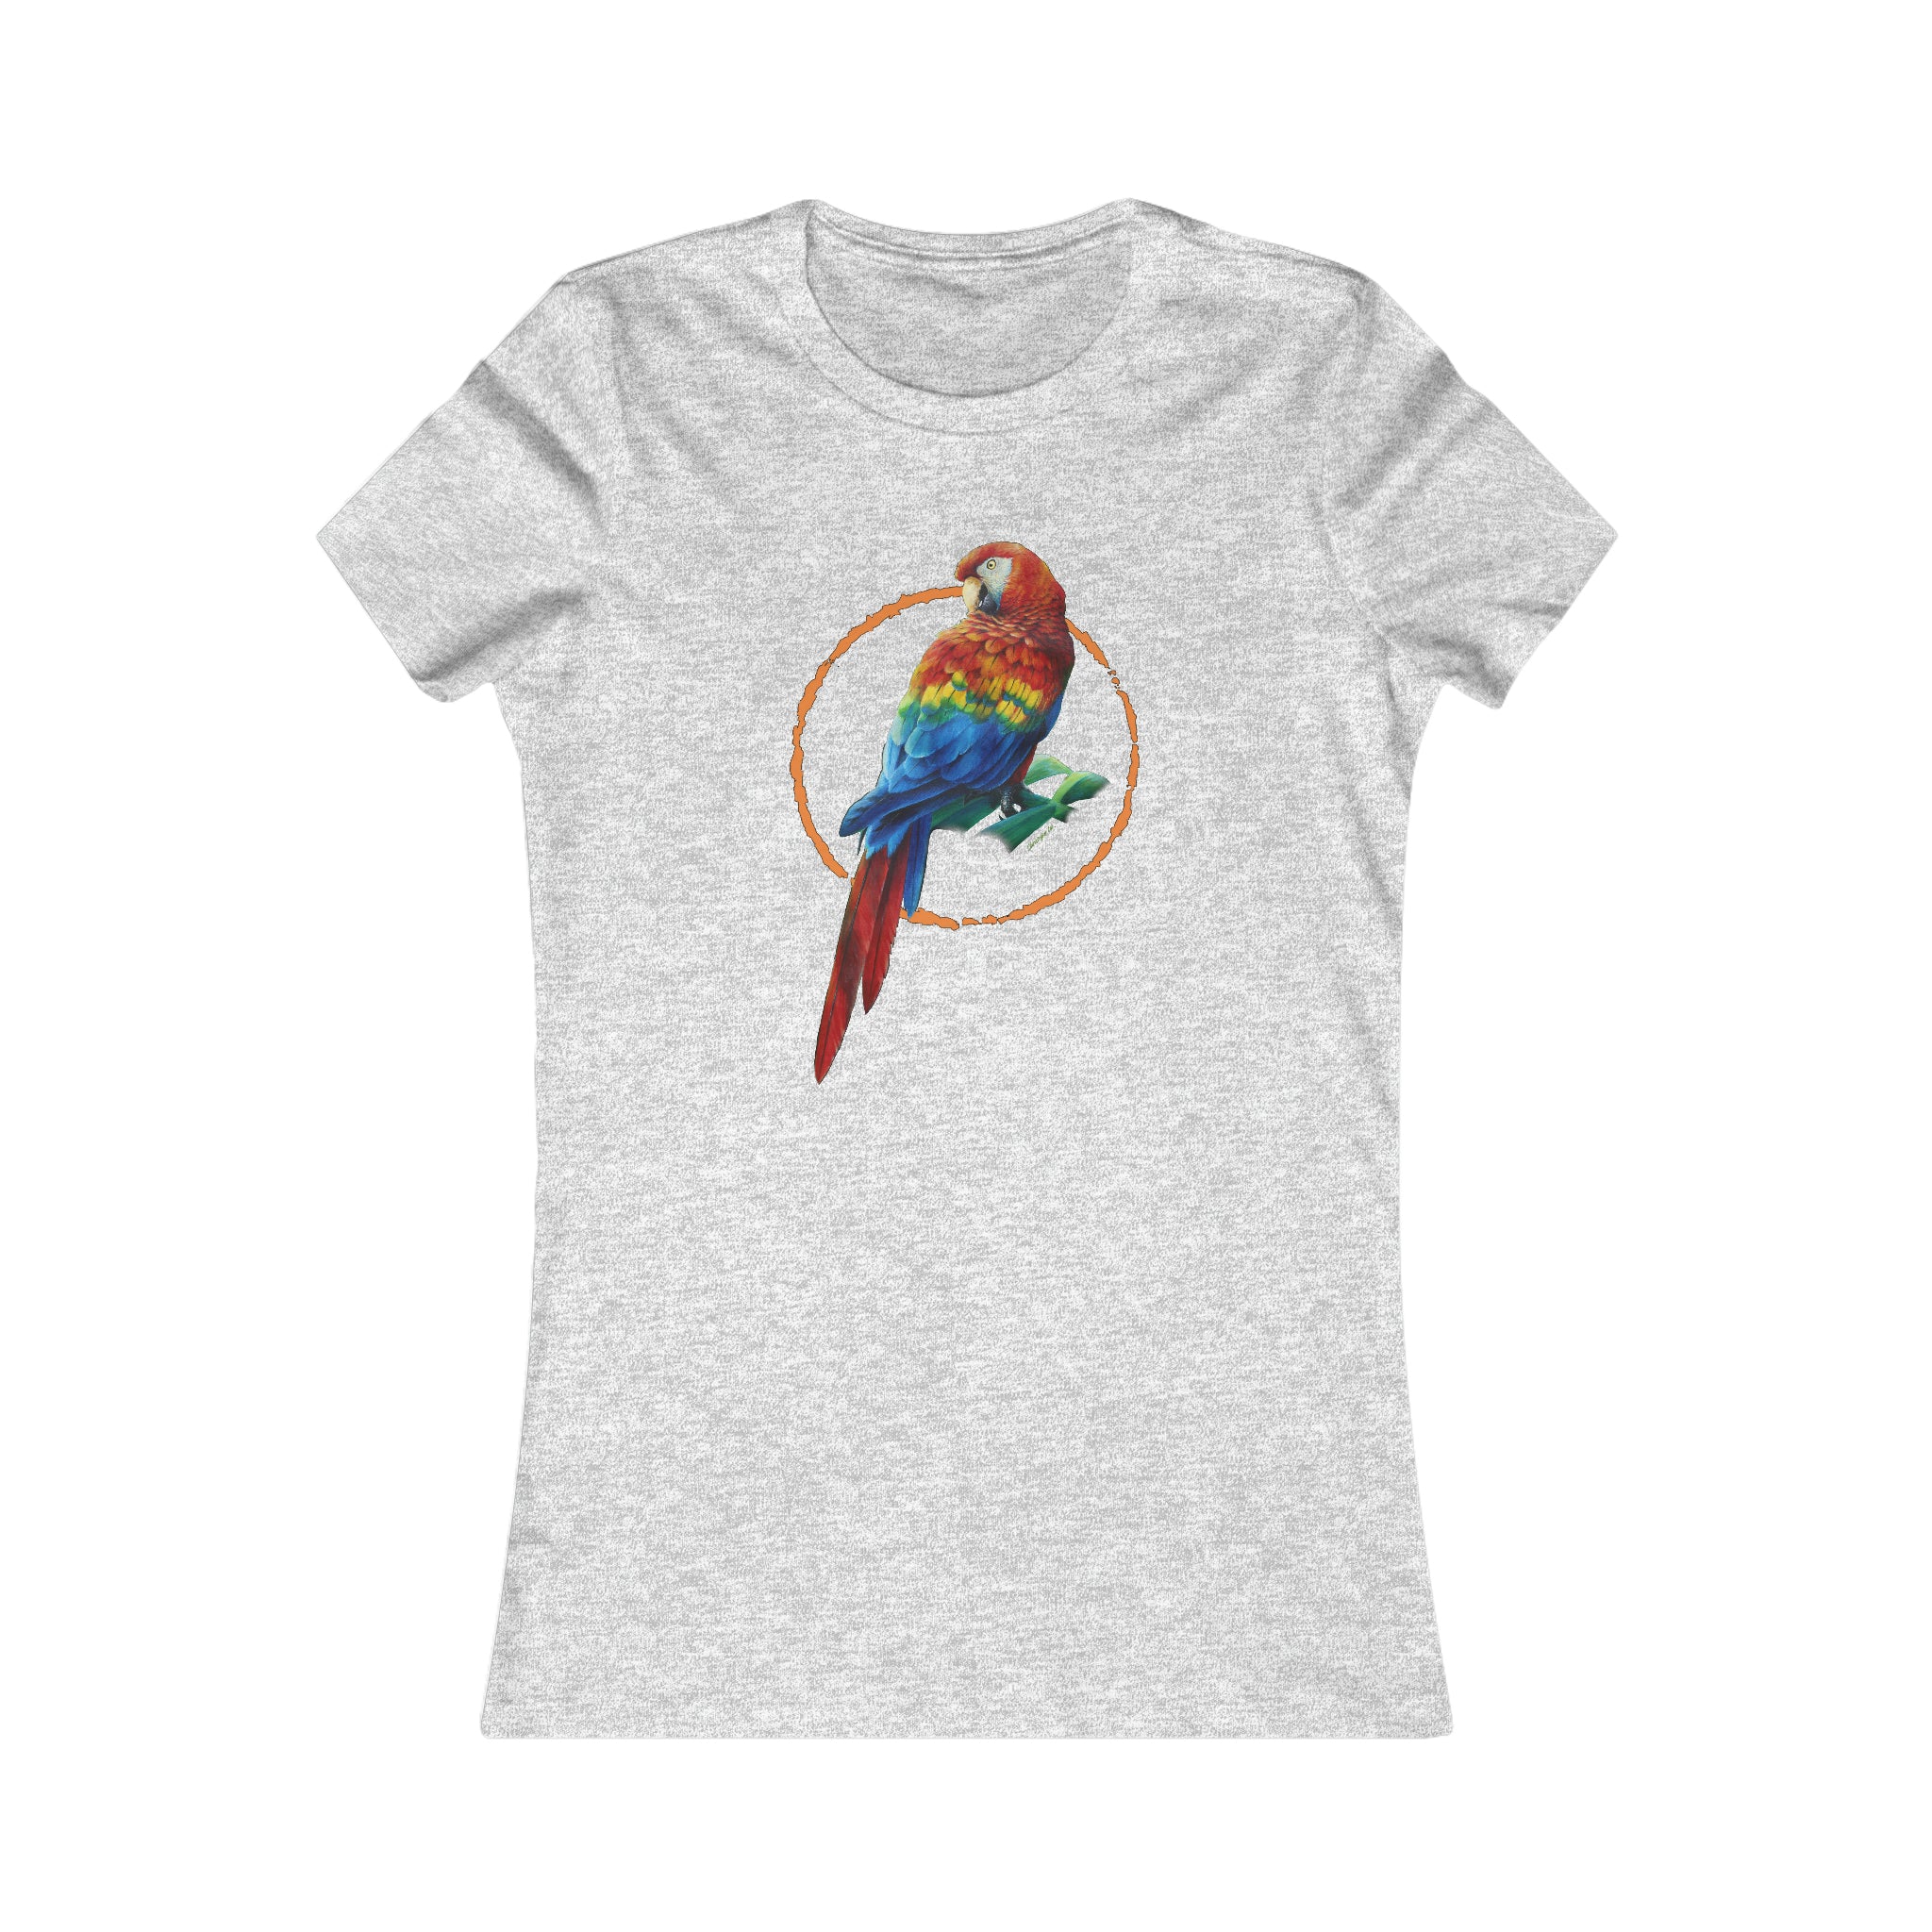 Scarlet Macaw Women's Tee, Parrot shirts, Bird shirts, Wearable art, Women's shirts